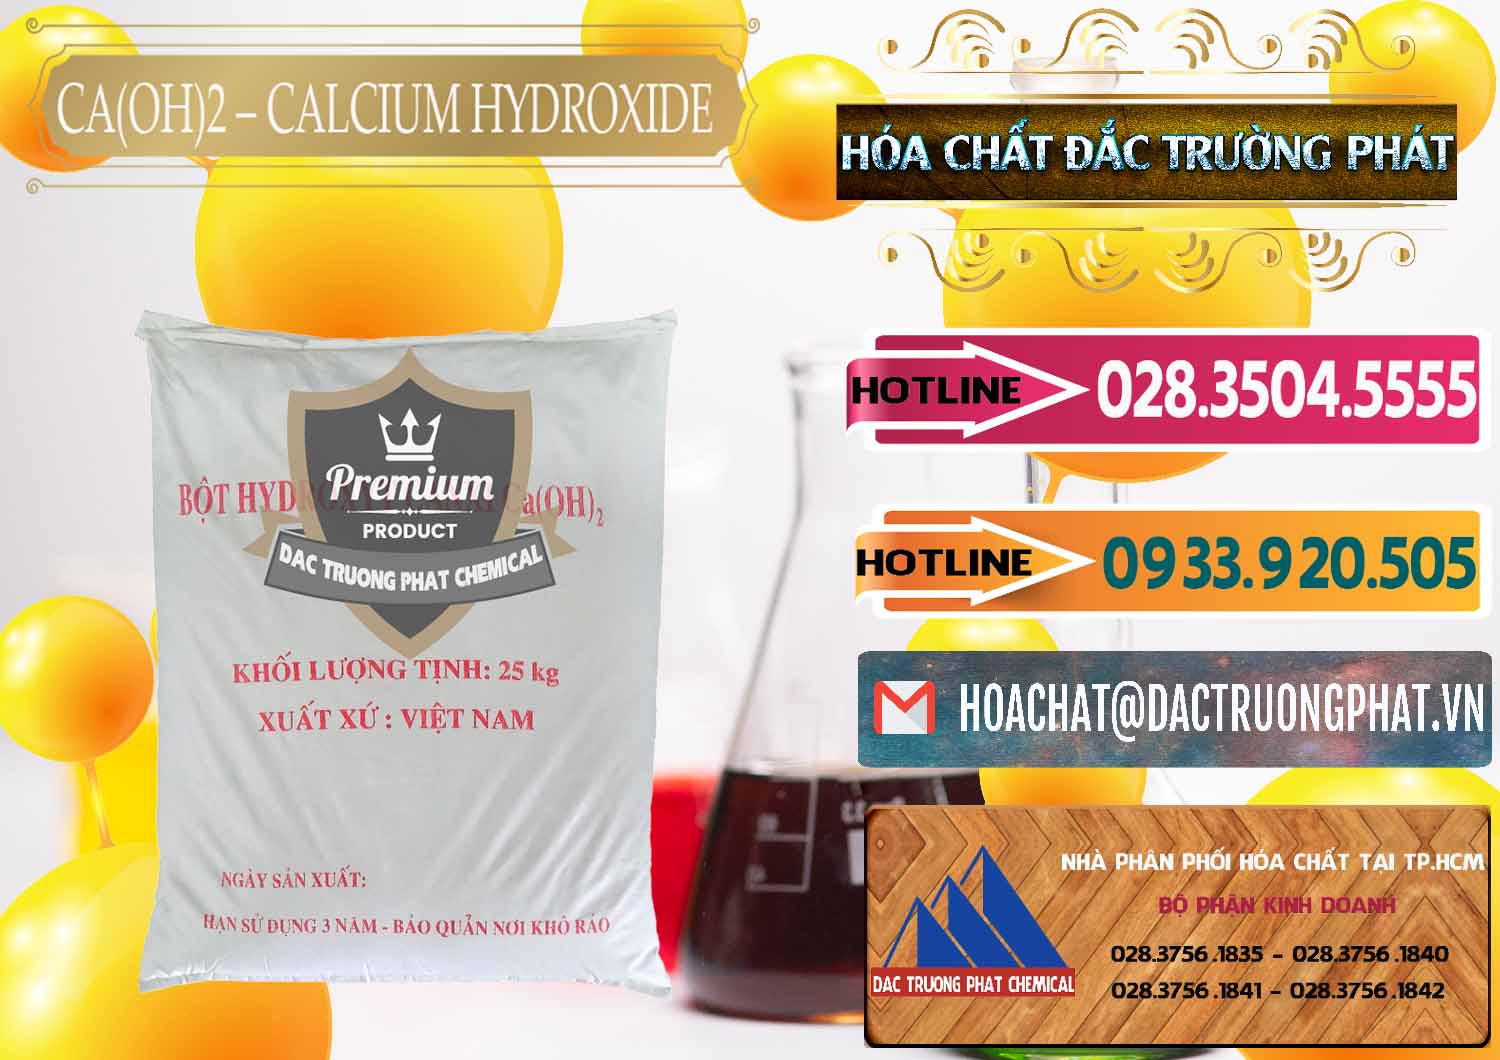 Nơi chuyên cung ứng _ bán Ca(OH)2 - Calcium Hydroxide Việt Nam - 0186 - Nhà cung ứng & bán hóa chất tại TP.HCM - dactruongphat.vn